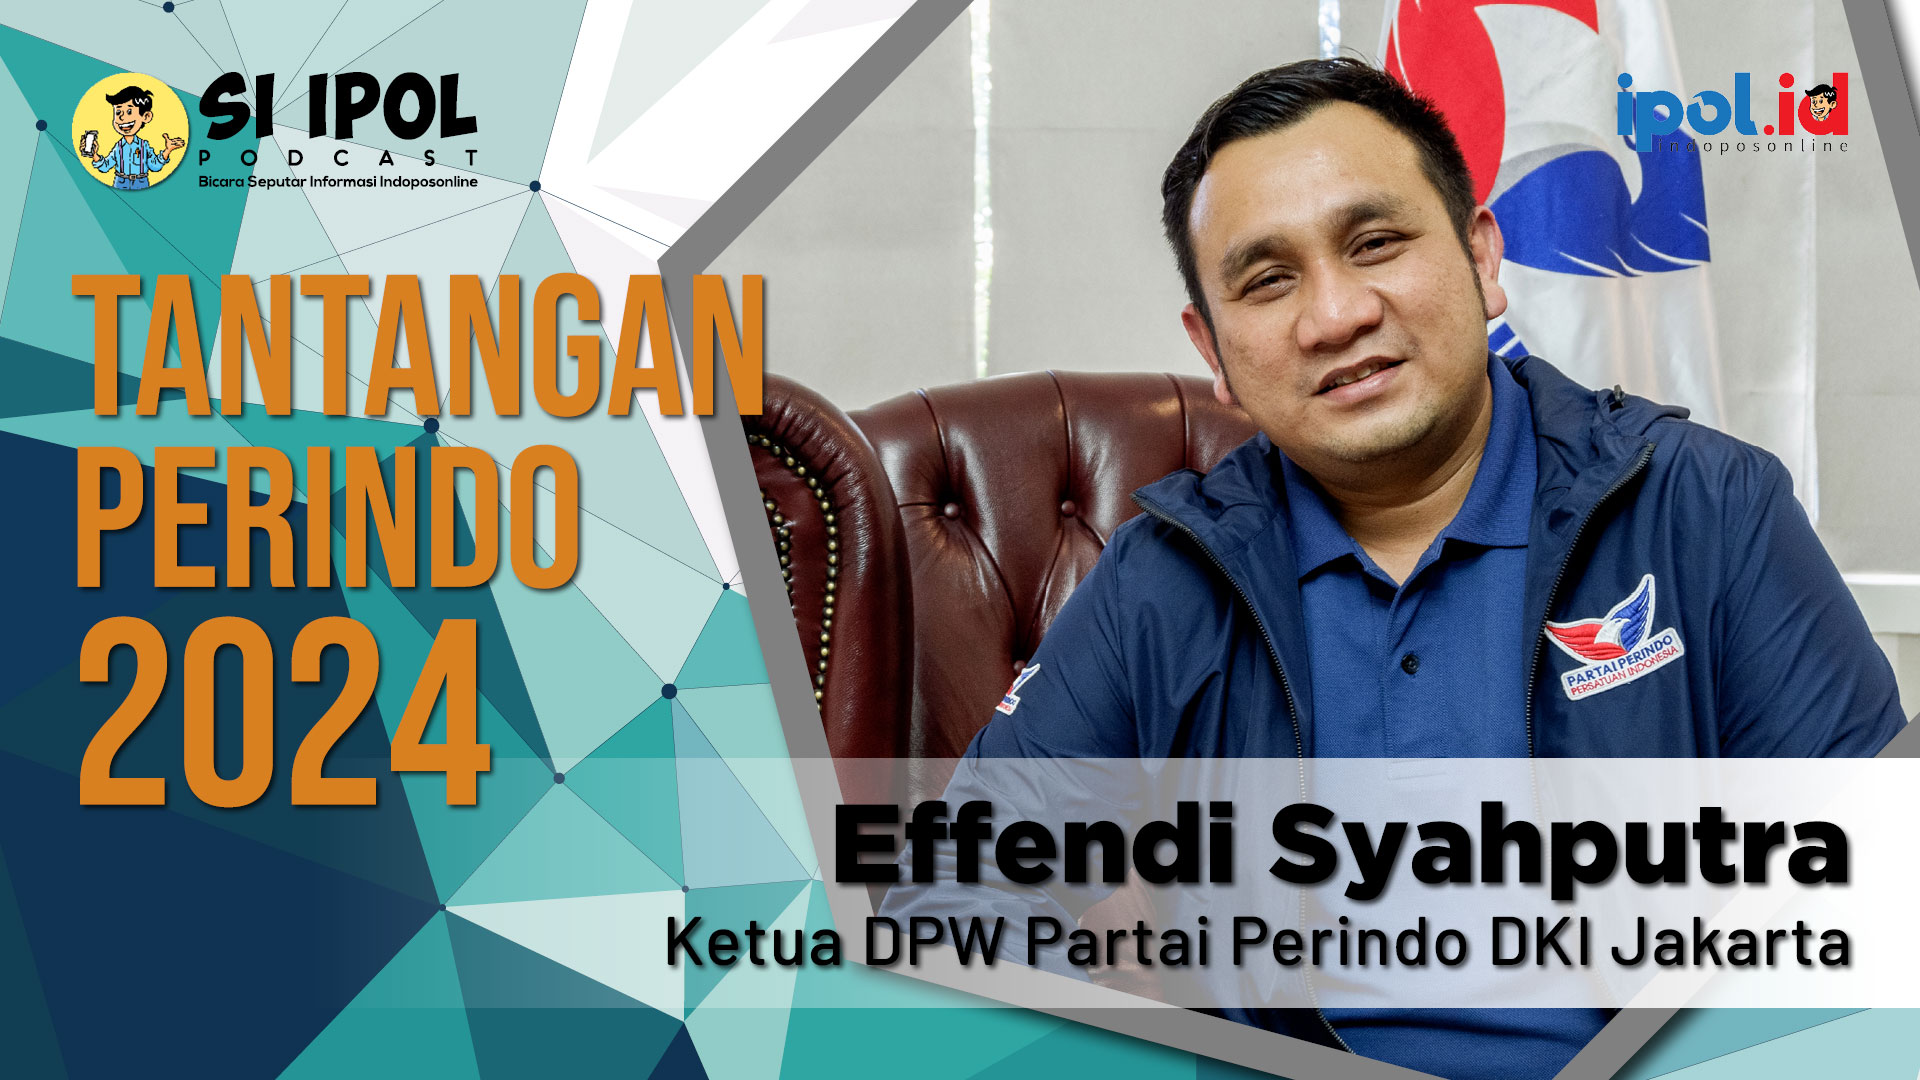 Ketua DPW Partai Perindo DKI Jakarta Effendi Syahputra